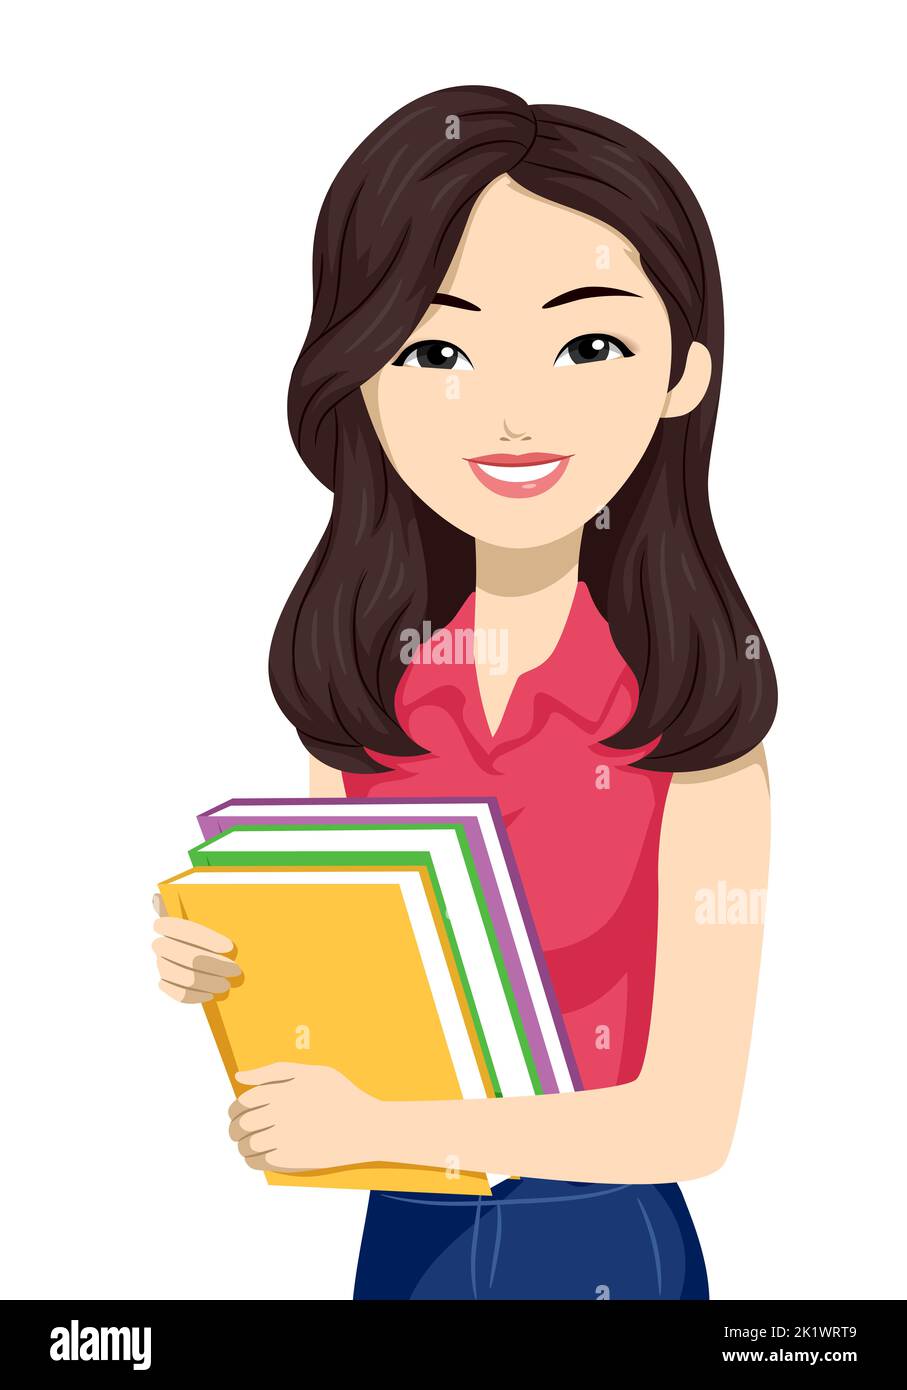 Illustration of East Asian Teen Girl Student Holding Books Stock Photo